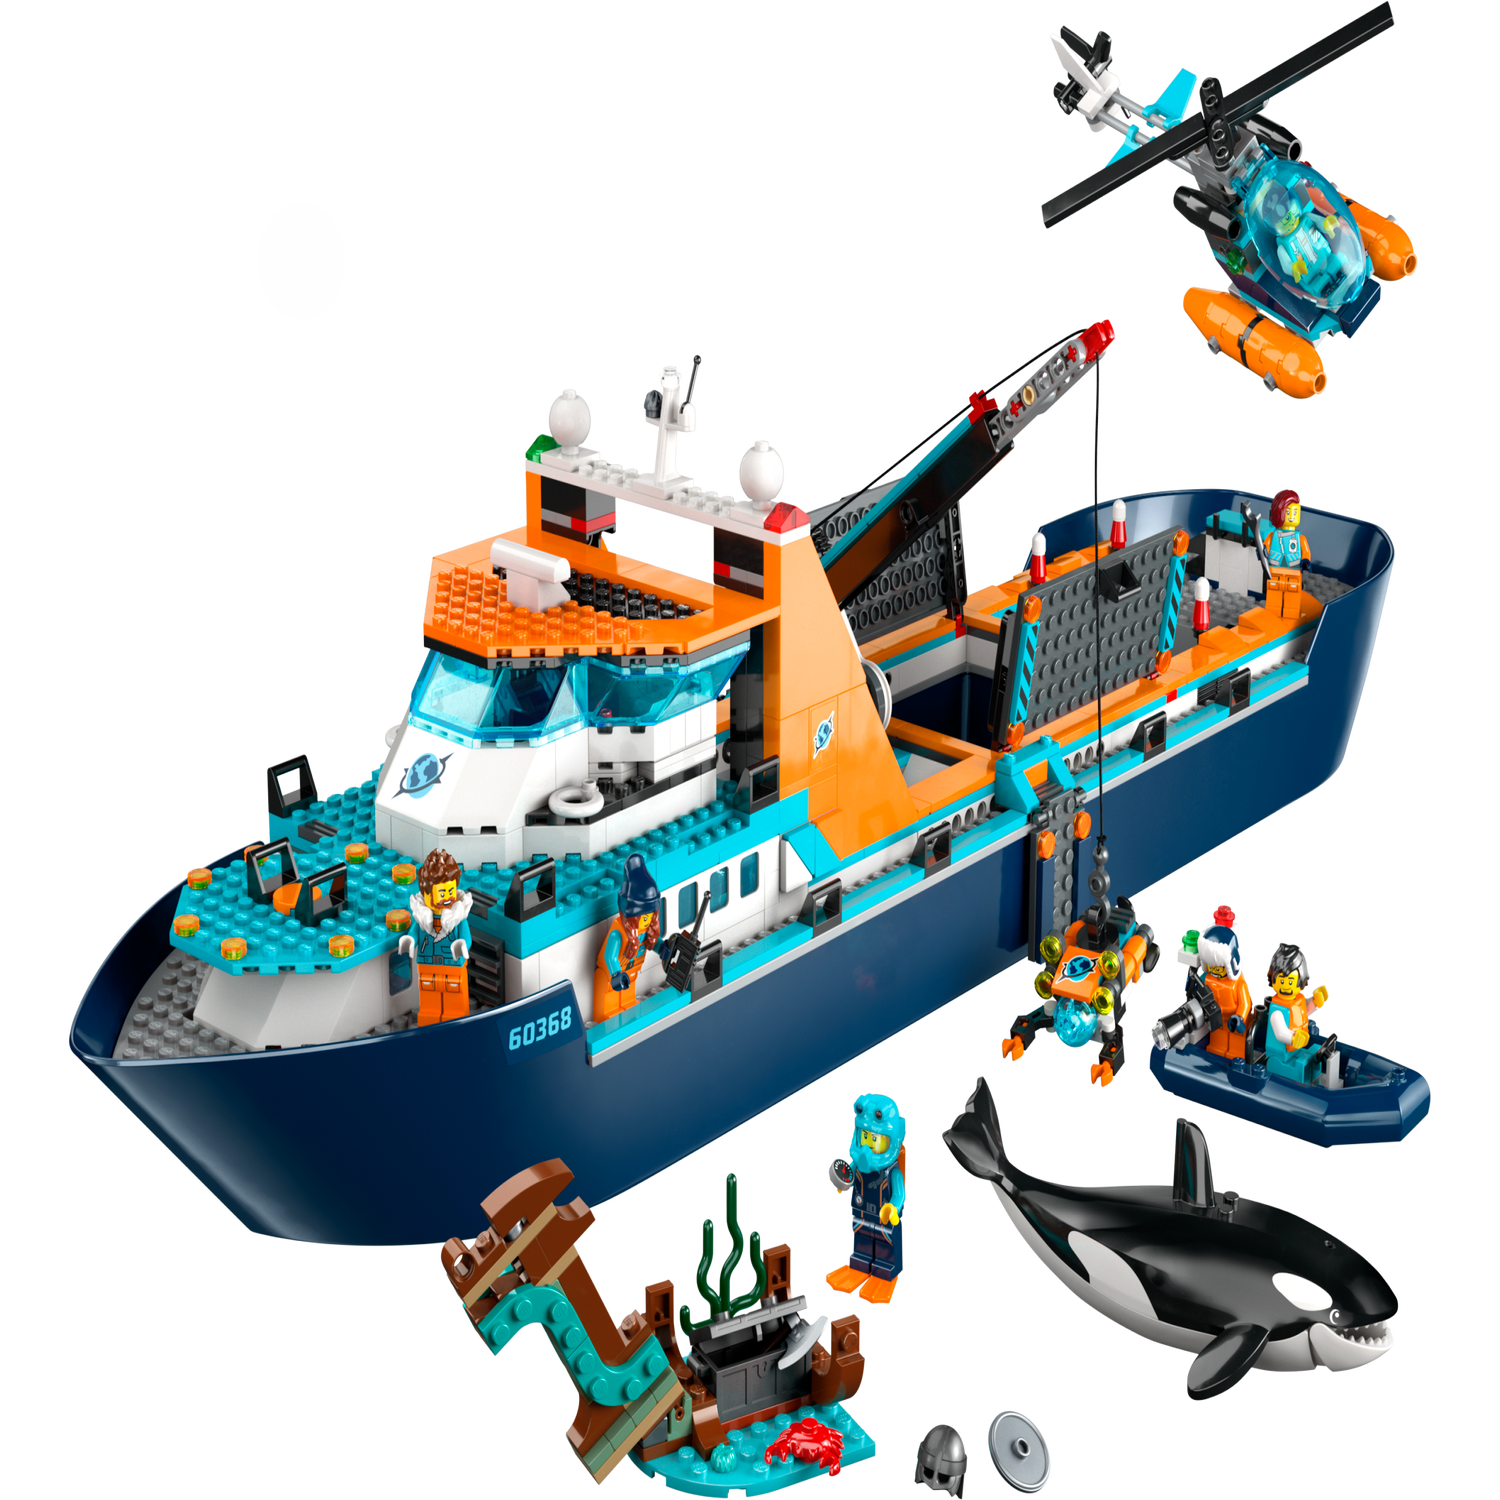 Le bateau d’exploration arctique 60368 | City | Boutique LEGO ...